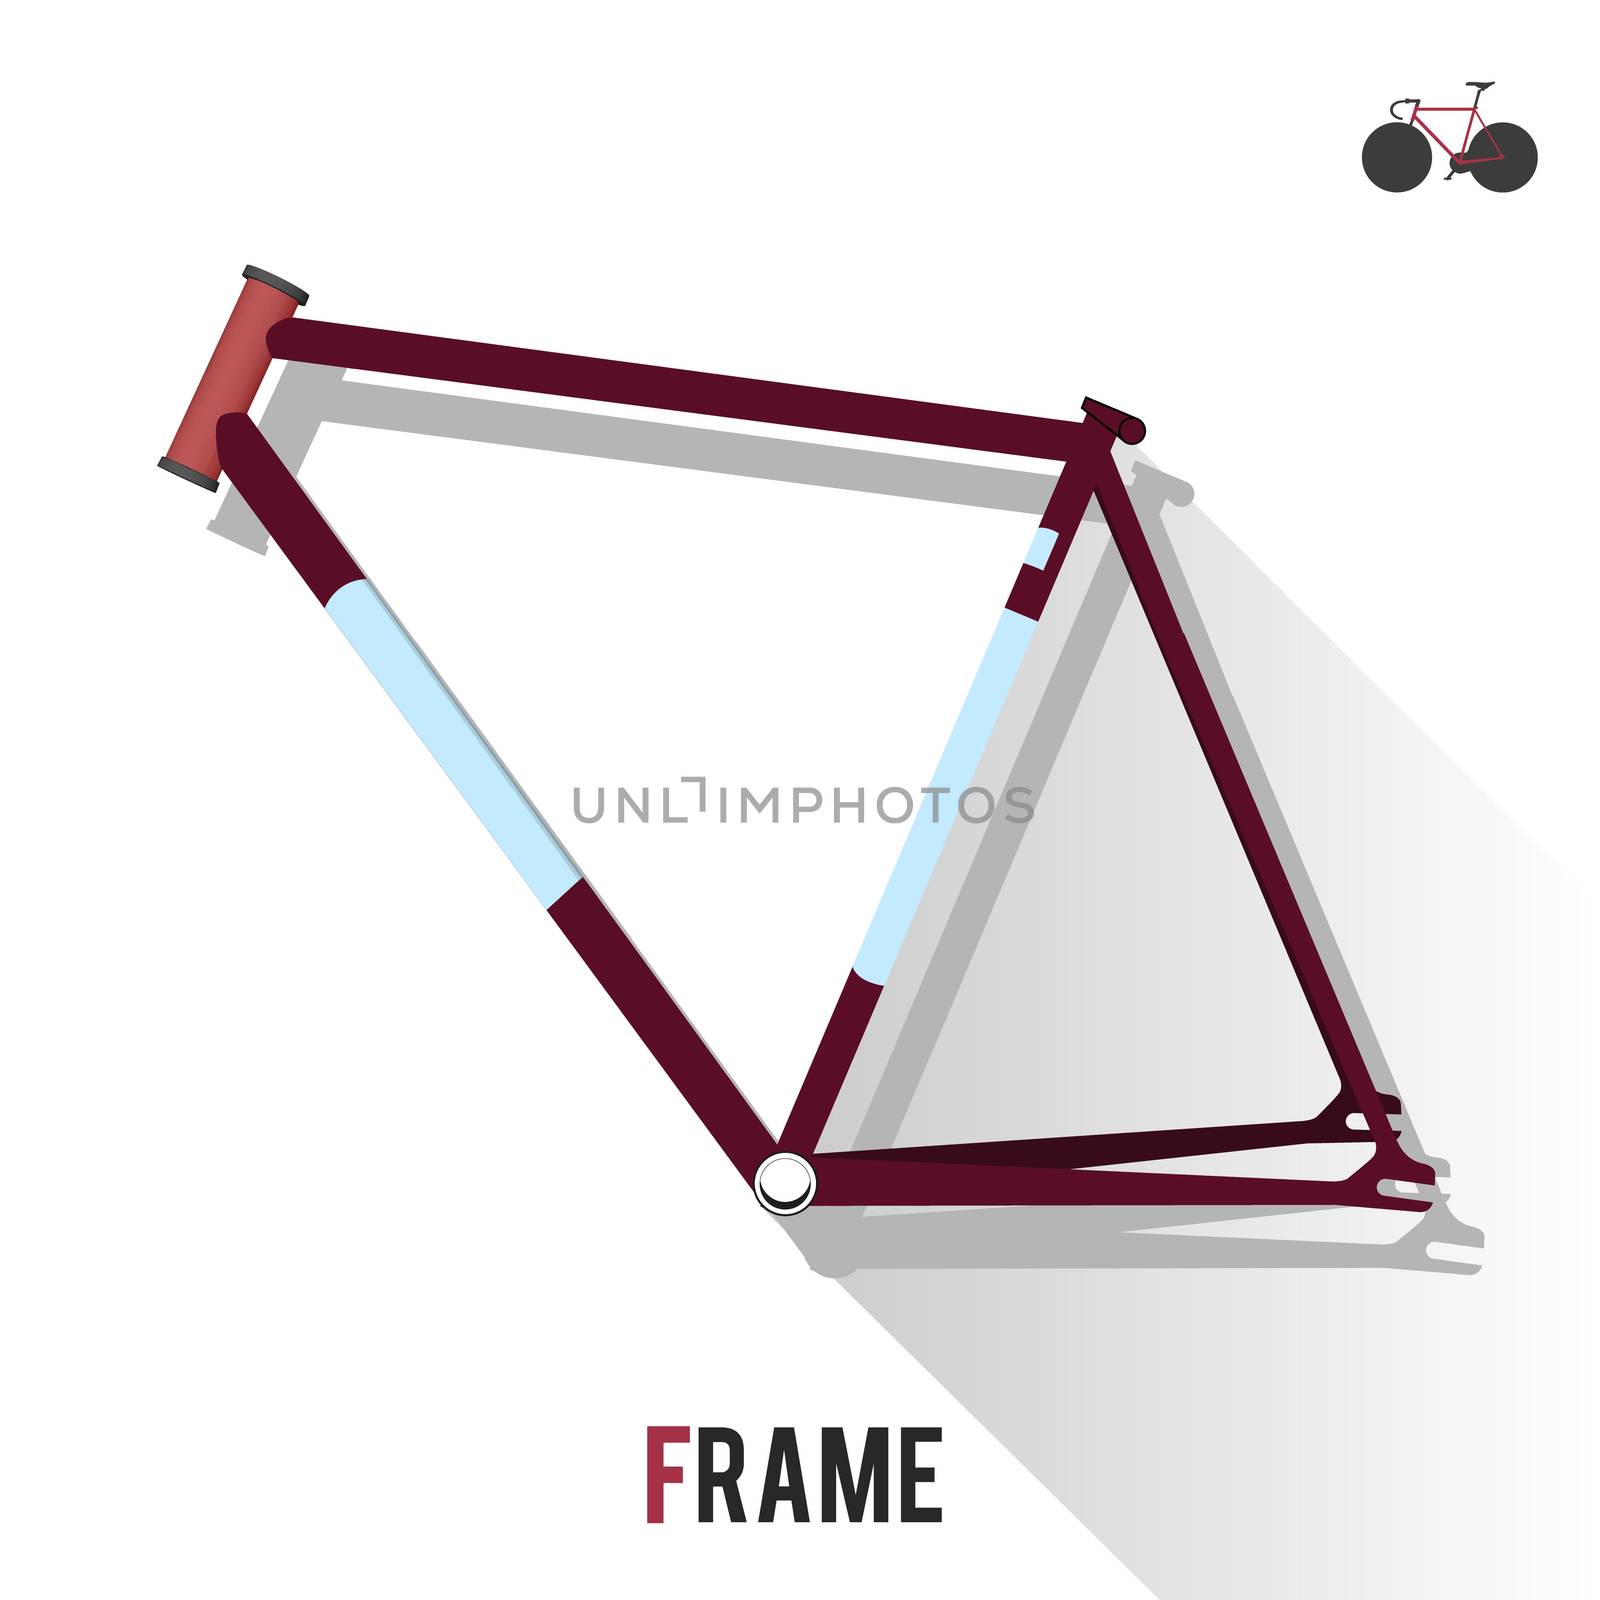 Fixed Gear Bike Frame by landscafe